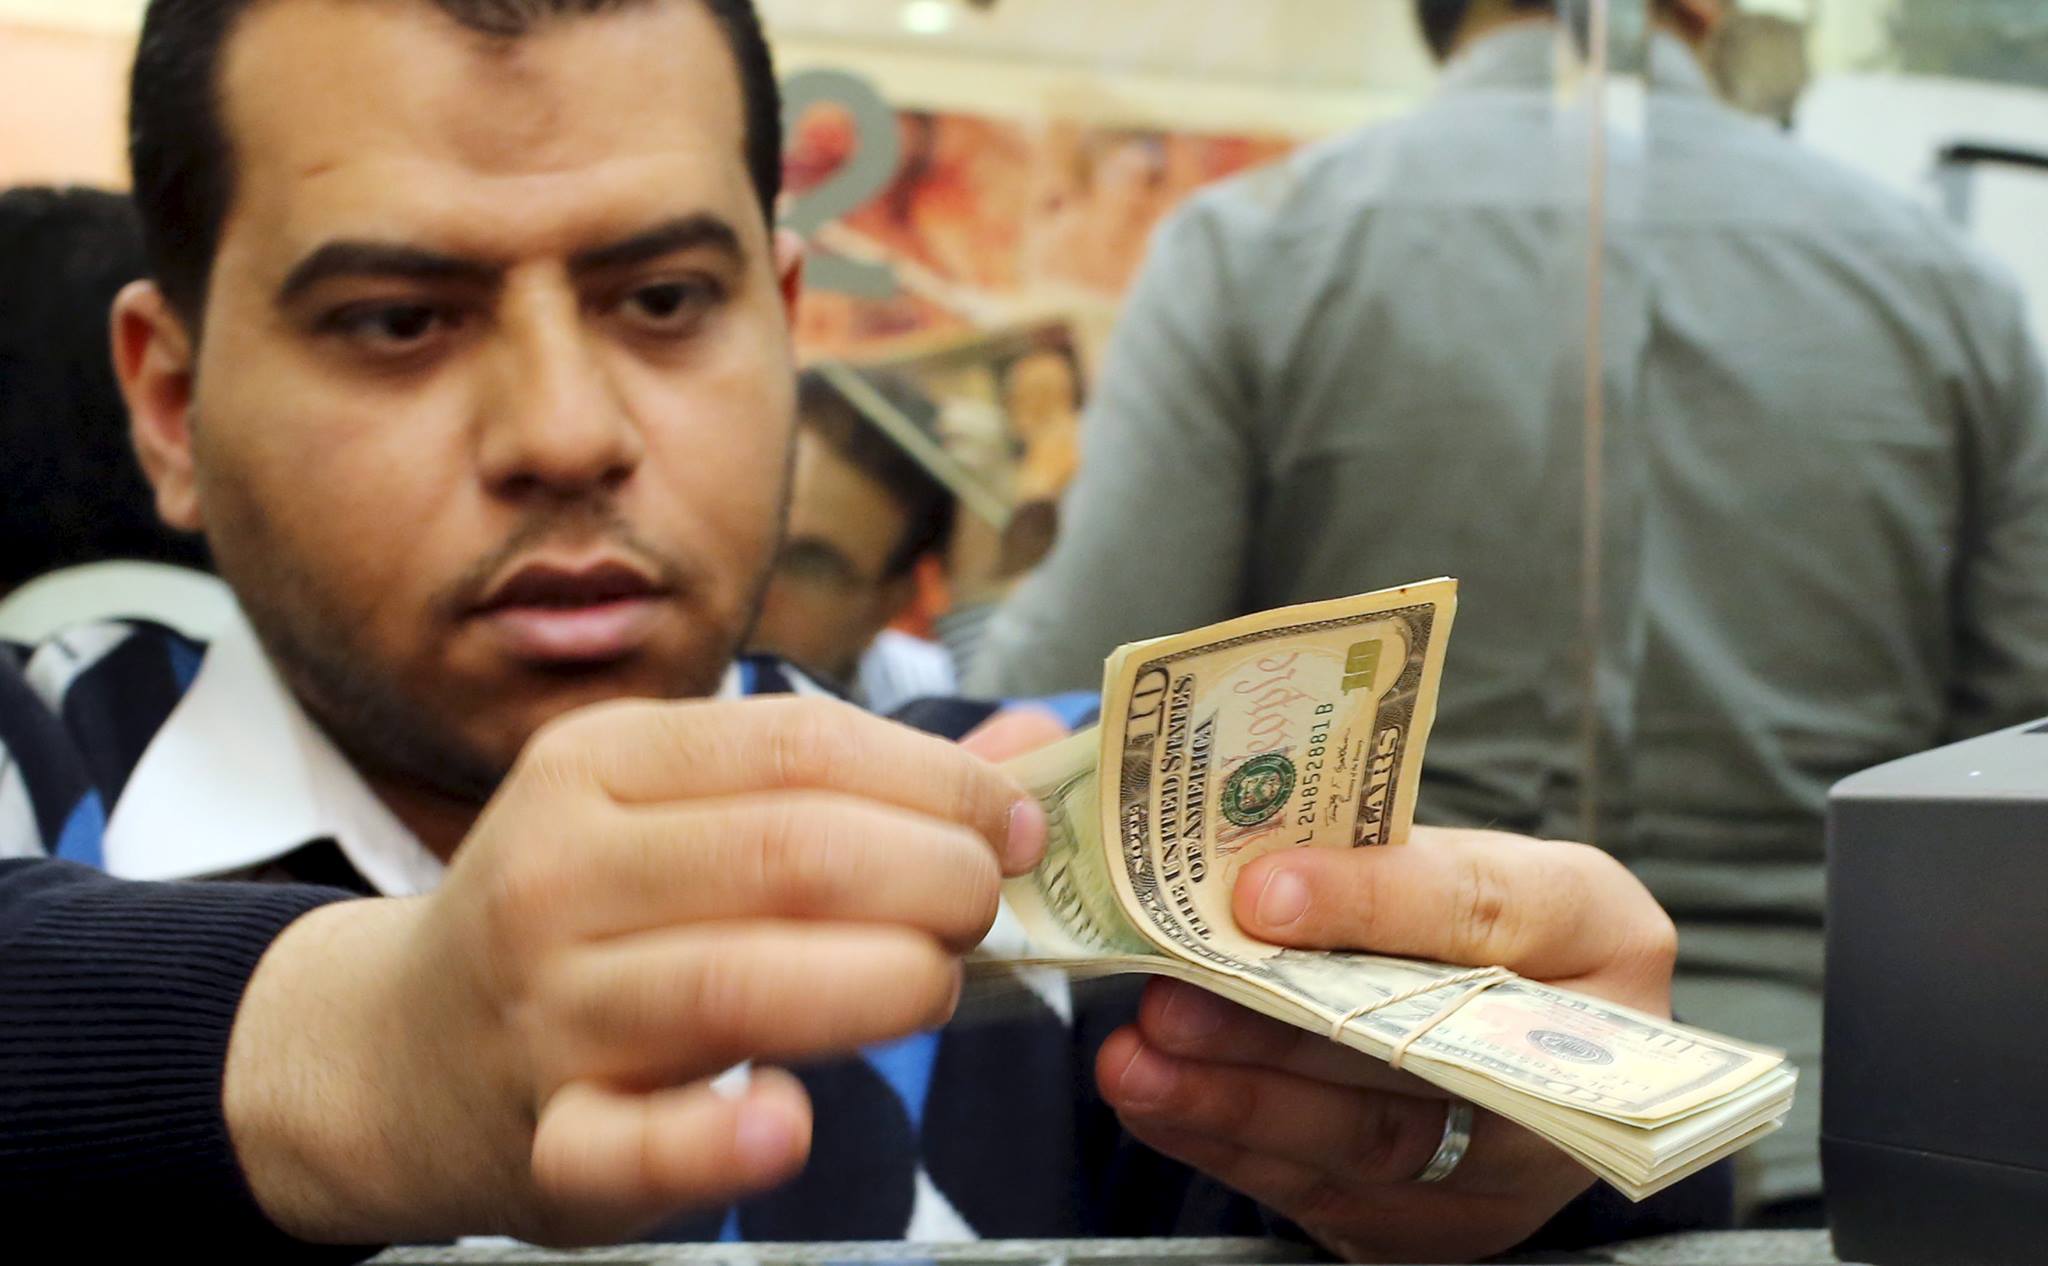 فاروس: معظم الشركات الكبرى في مصر حددت سعر الدولار ما بين 9 و9.5 جنيه في ميزانياتها الجديدة